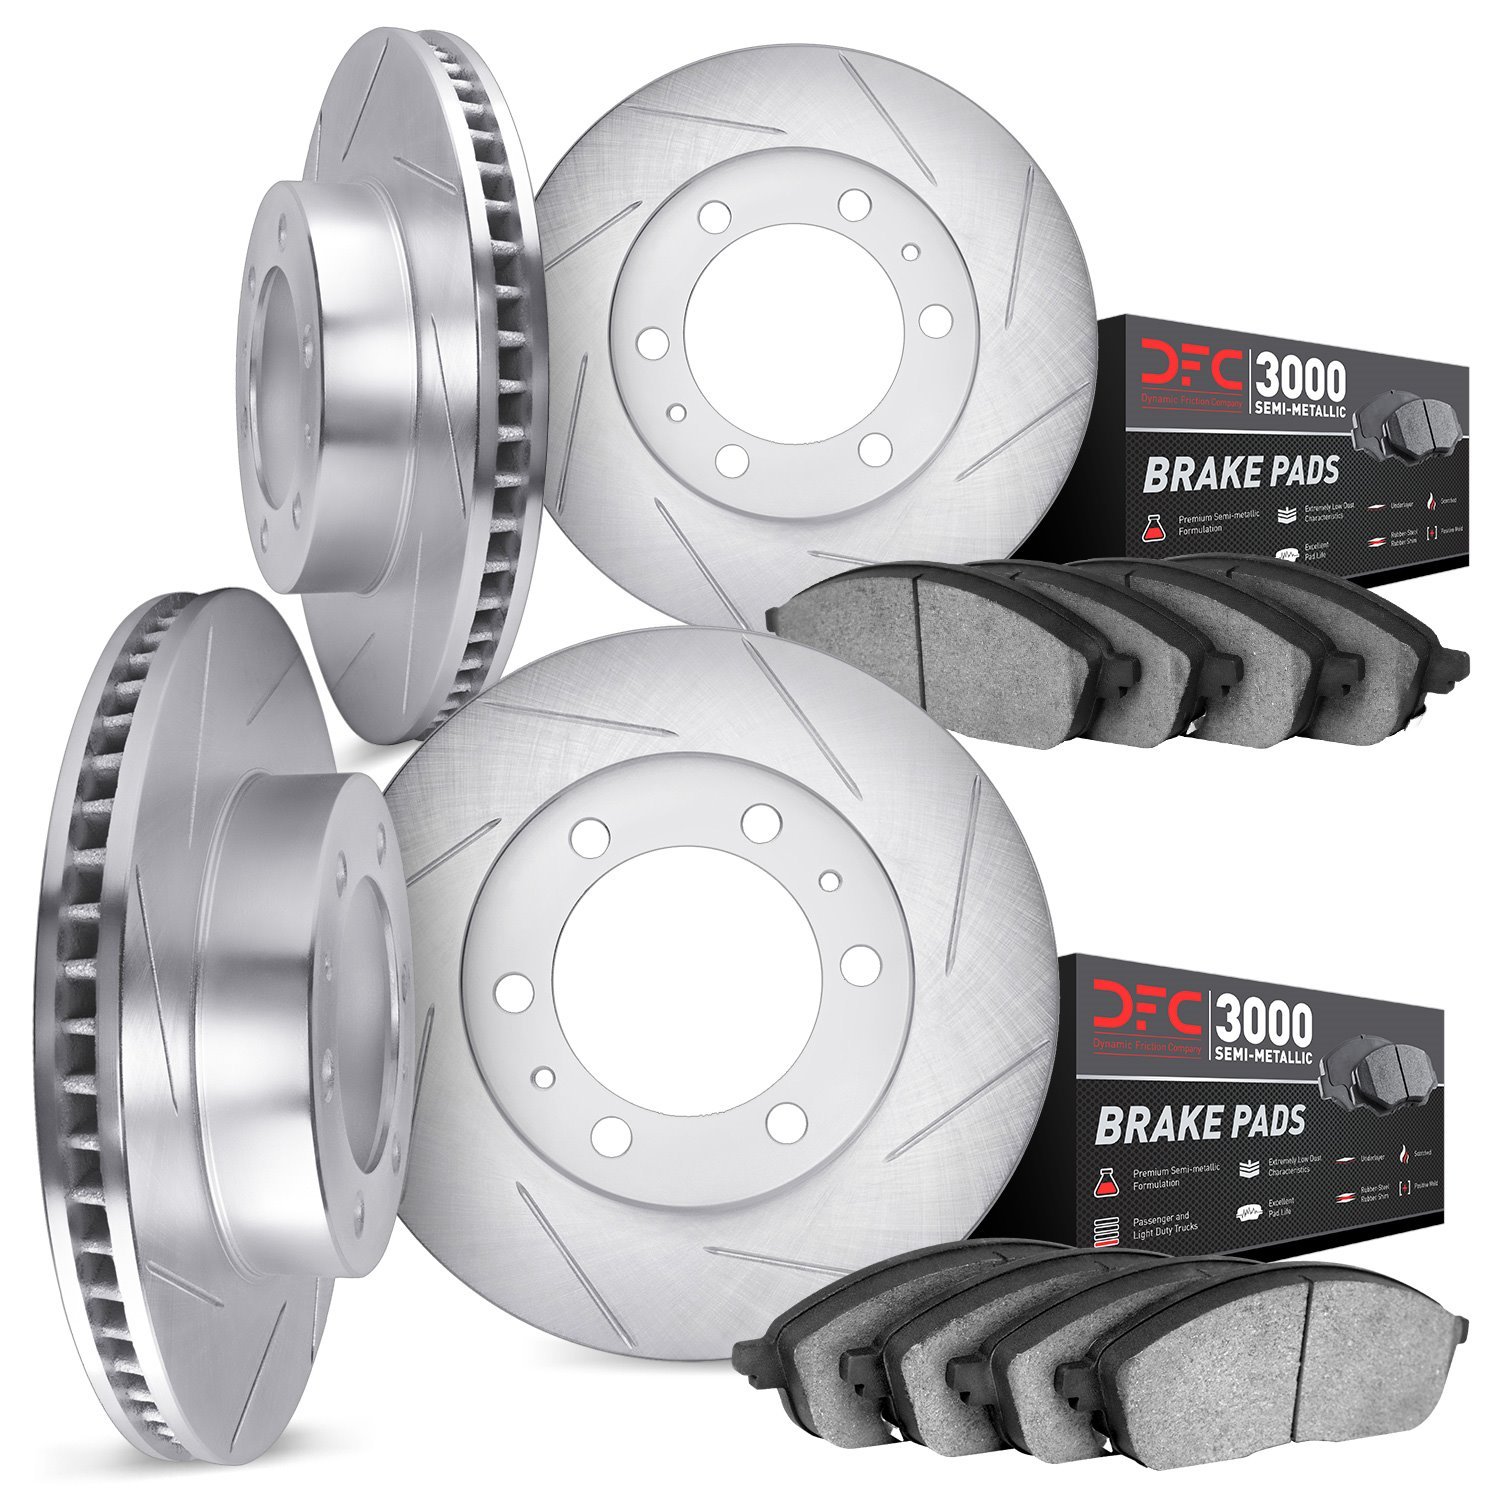 5114-76068 Slotted Brake Rotors with 3000-Series Semi-Metallic Brake Pads Kit & Hardware [Silver], 2010-2014 Lexus/Toyota/Scion,